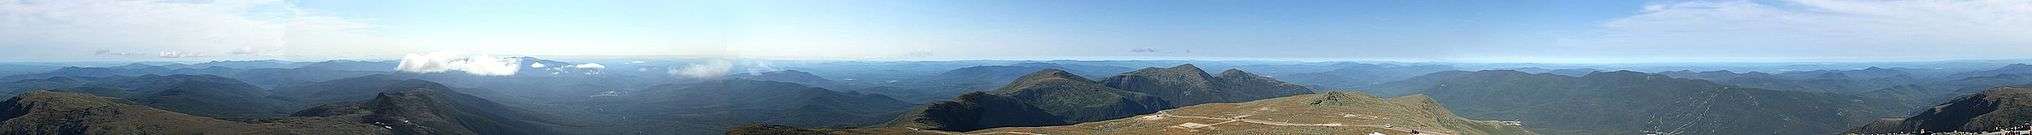 Mount Washington view